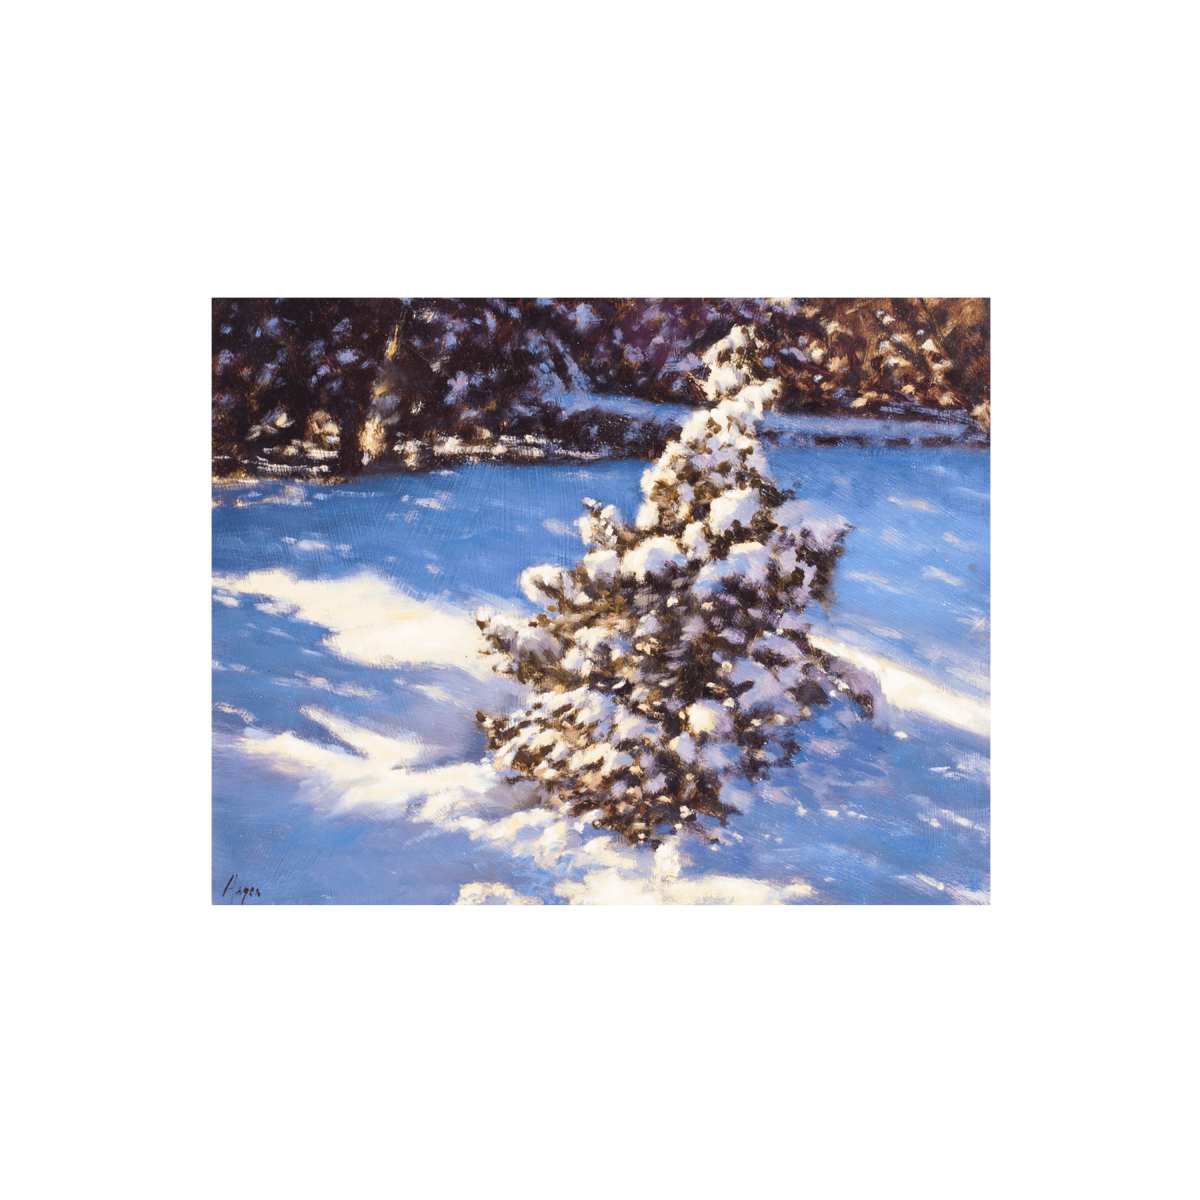 Lone Winter Pine by Peter Hagen